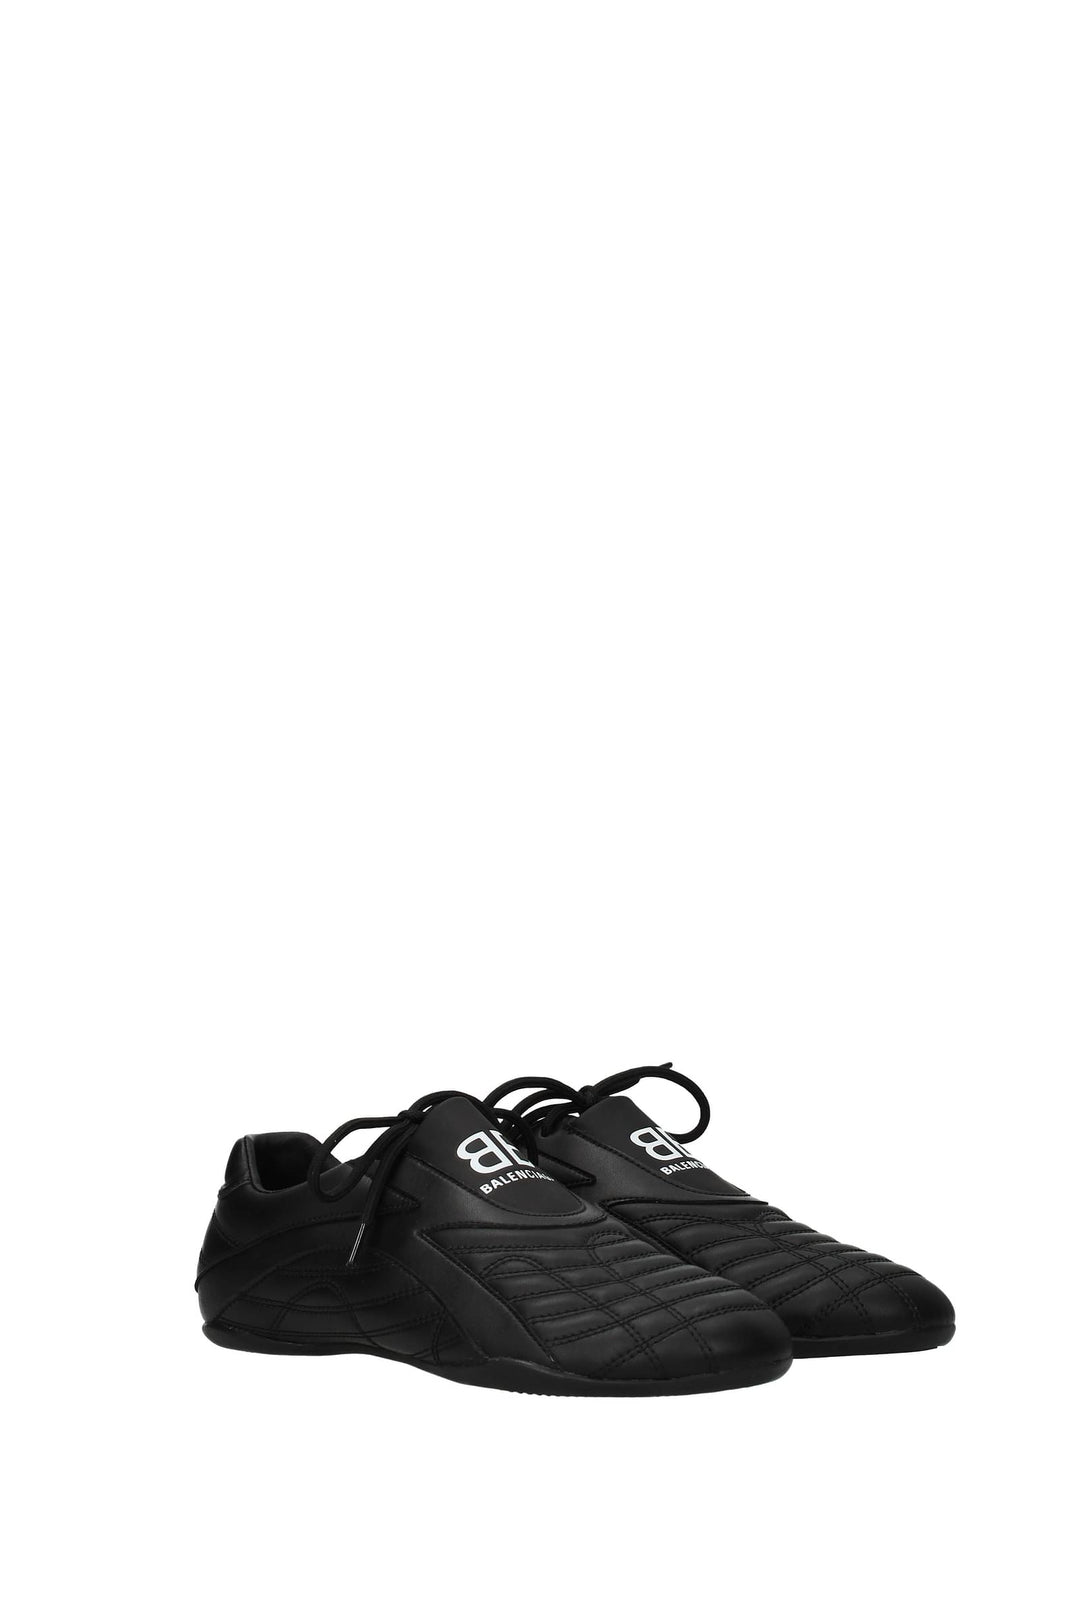 Sneakers Pelle Nero - Balenciaga - Donna